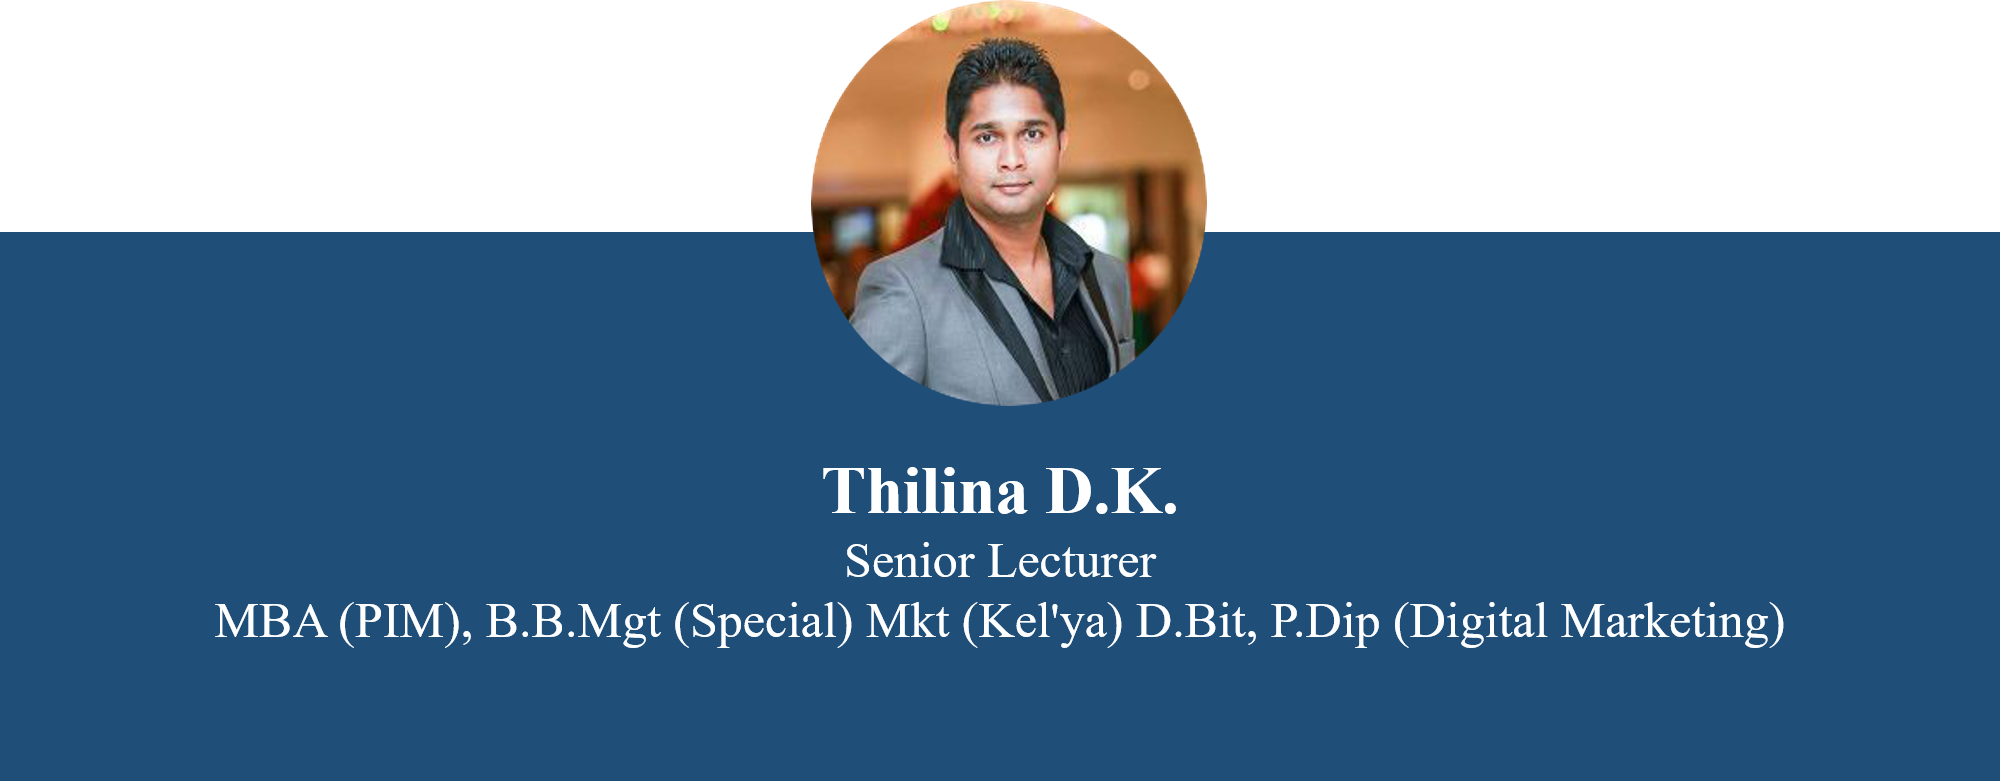 thilina-dk.png